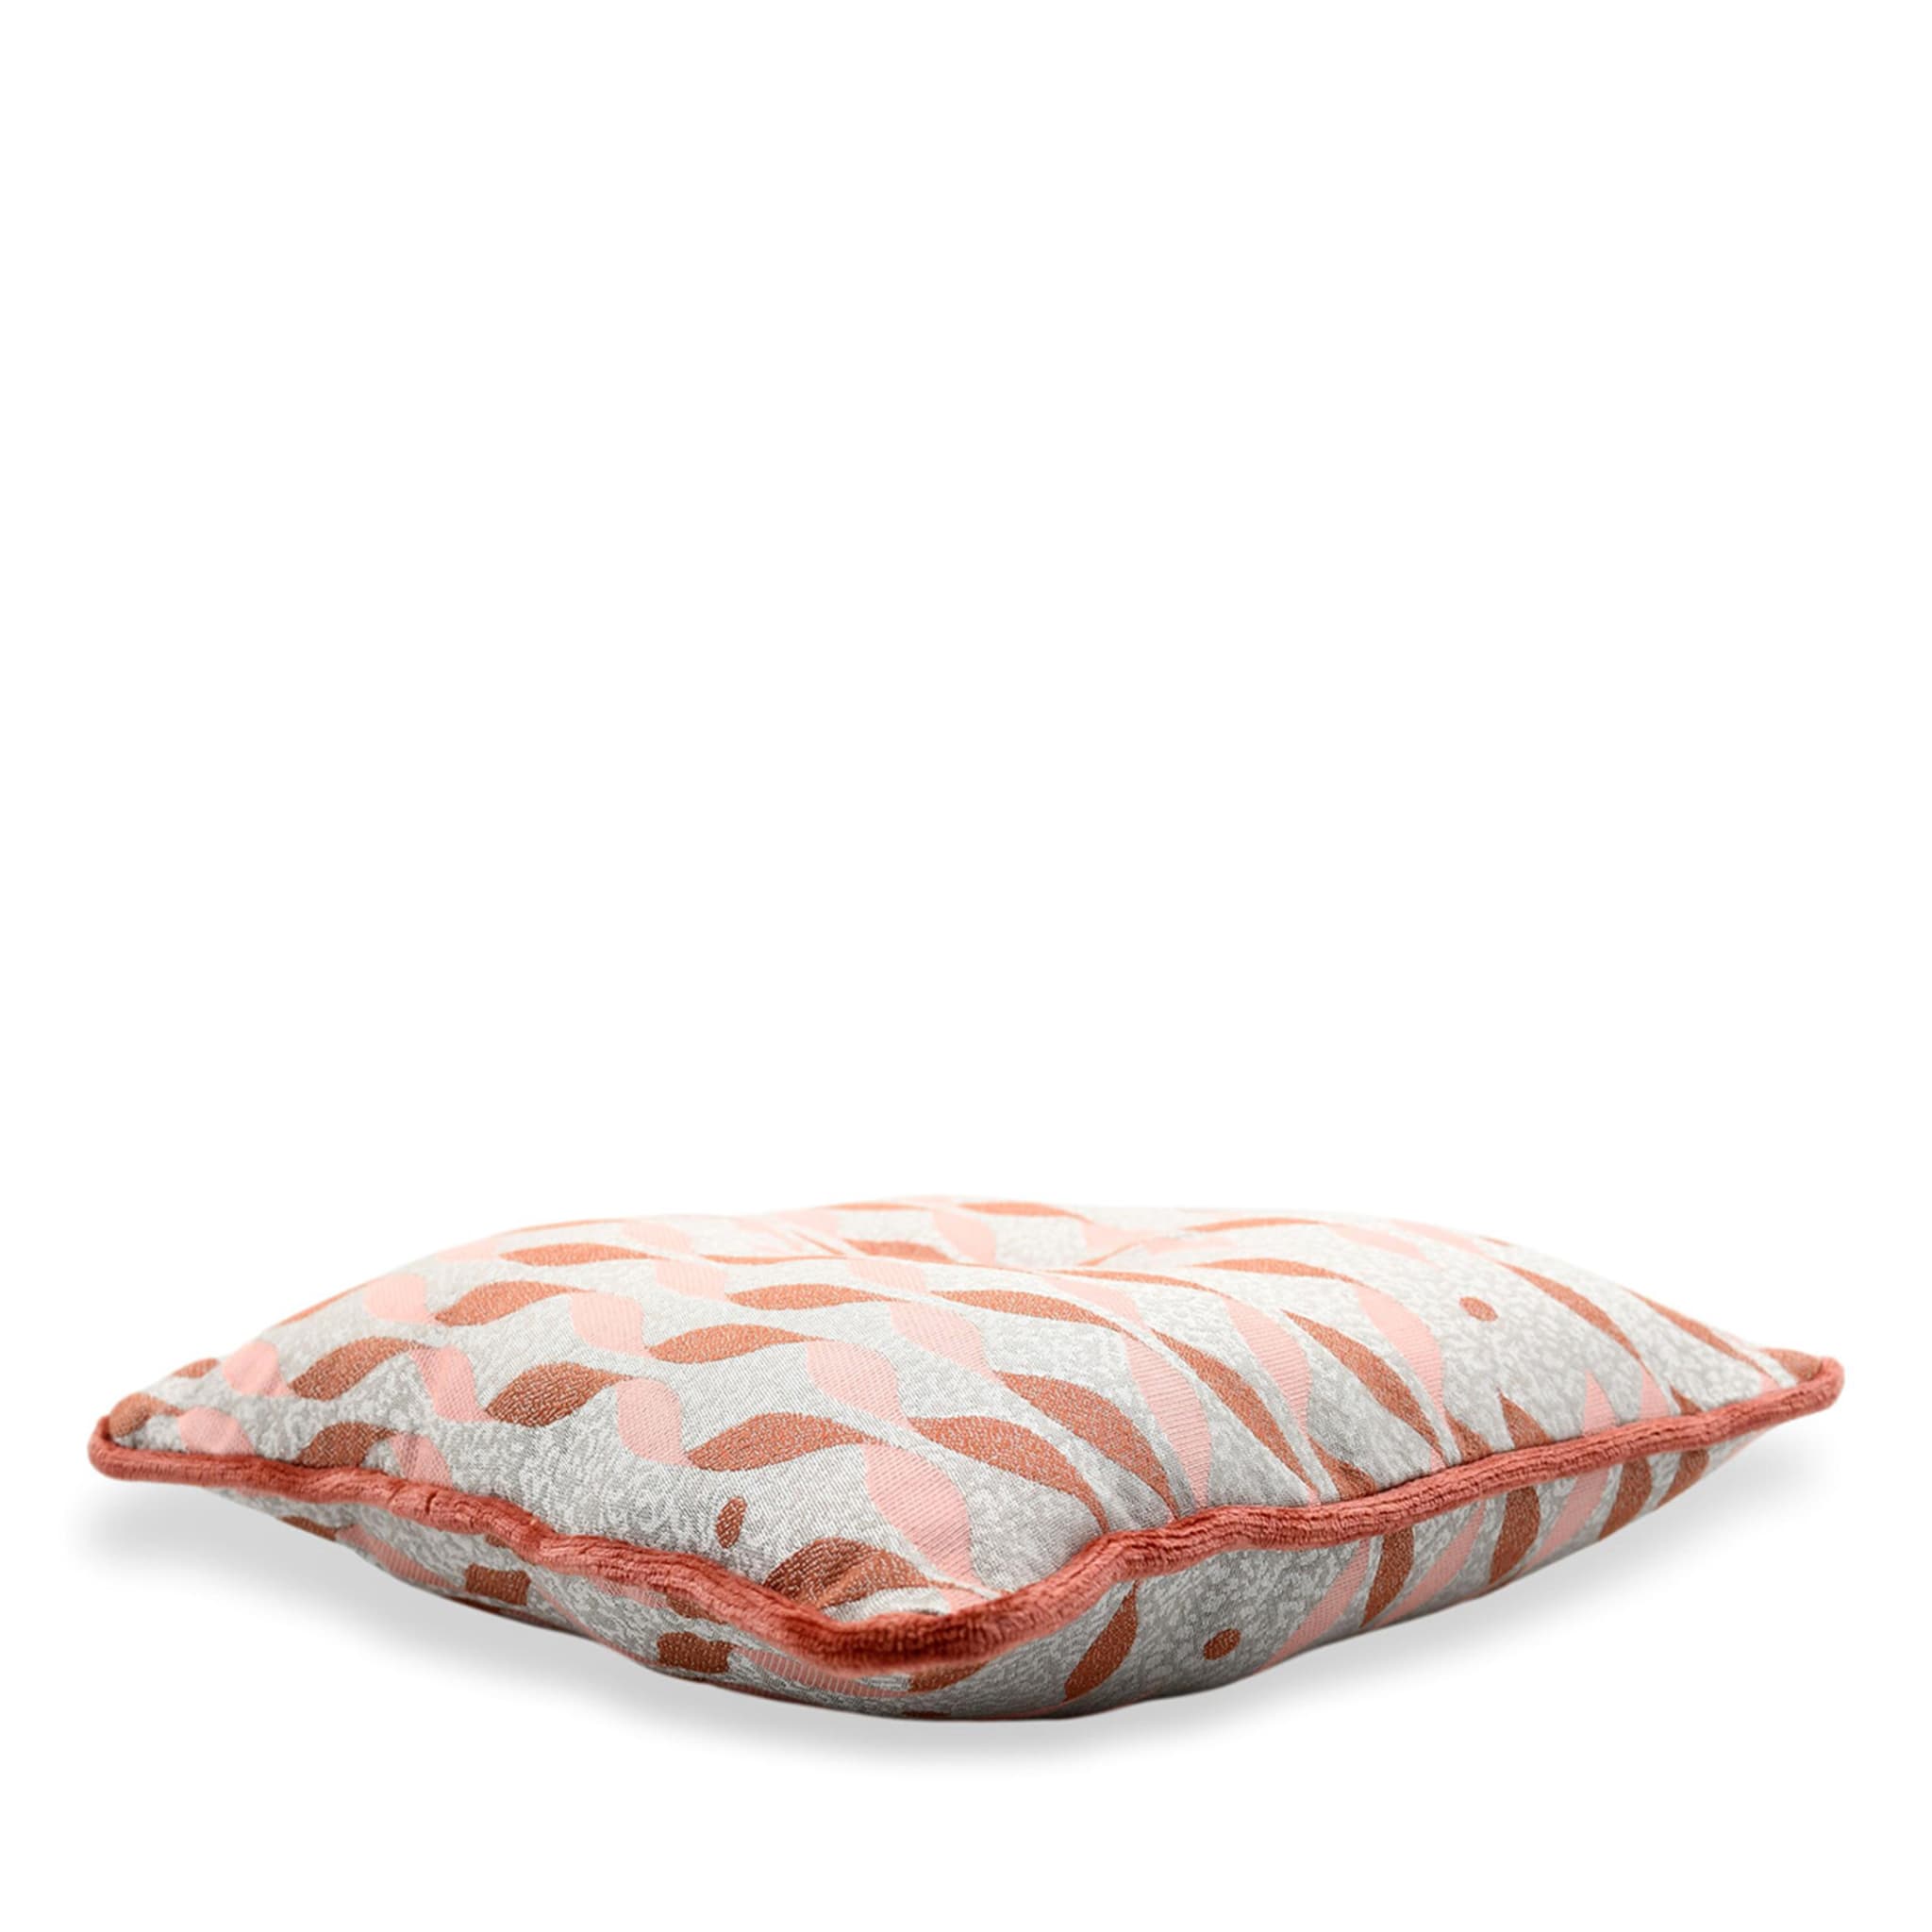 Pink Carrè Cushion in Talia Jacquard Fabric - Alternative view 1